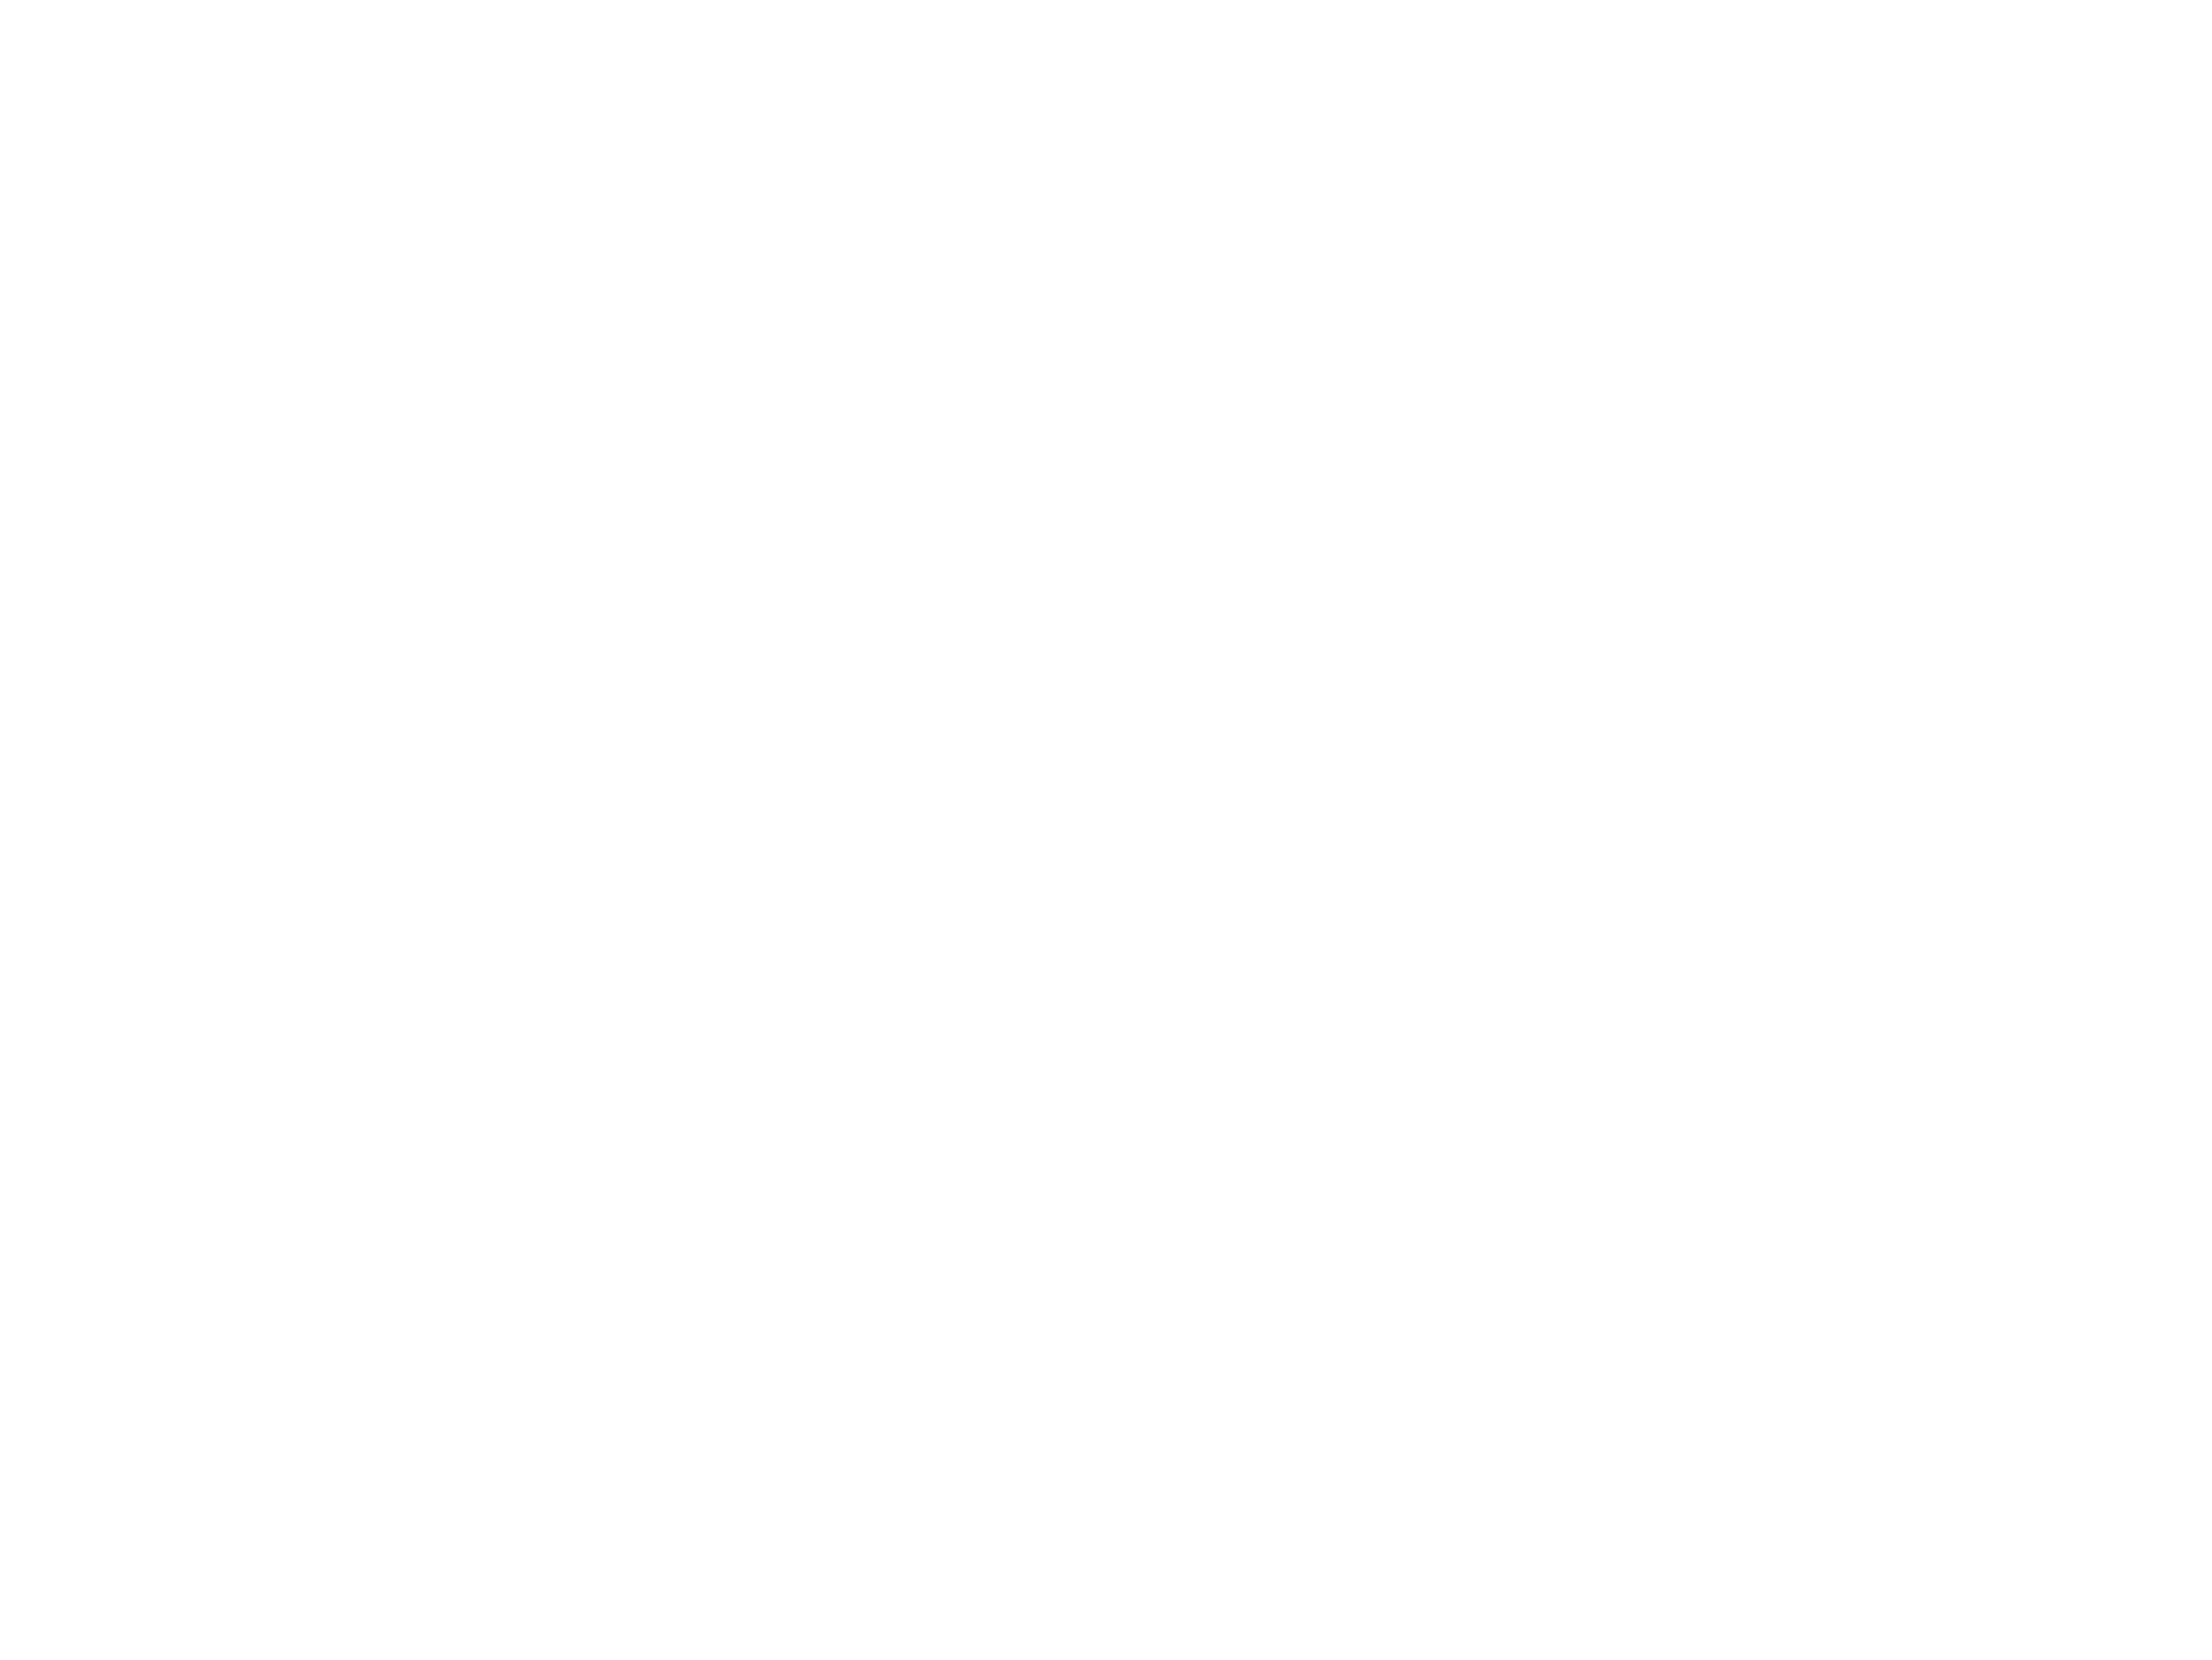 Conforama Suisse